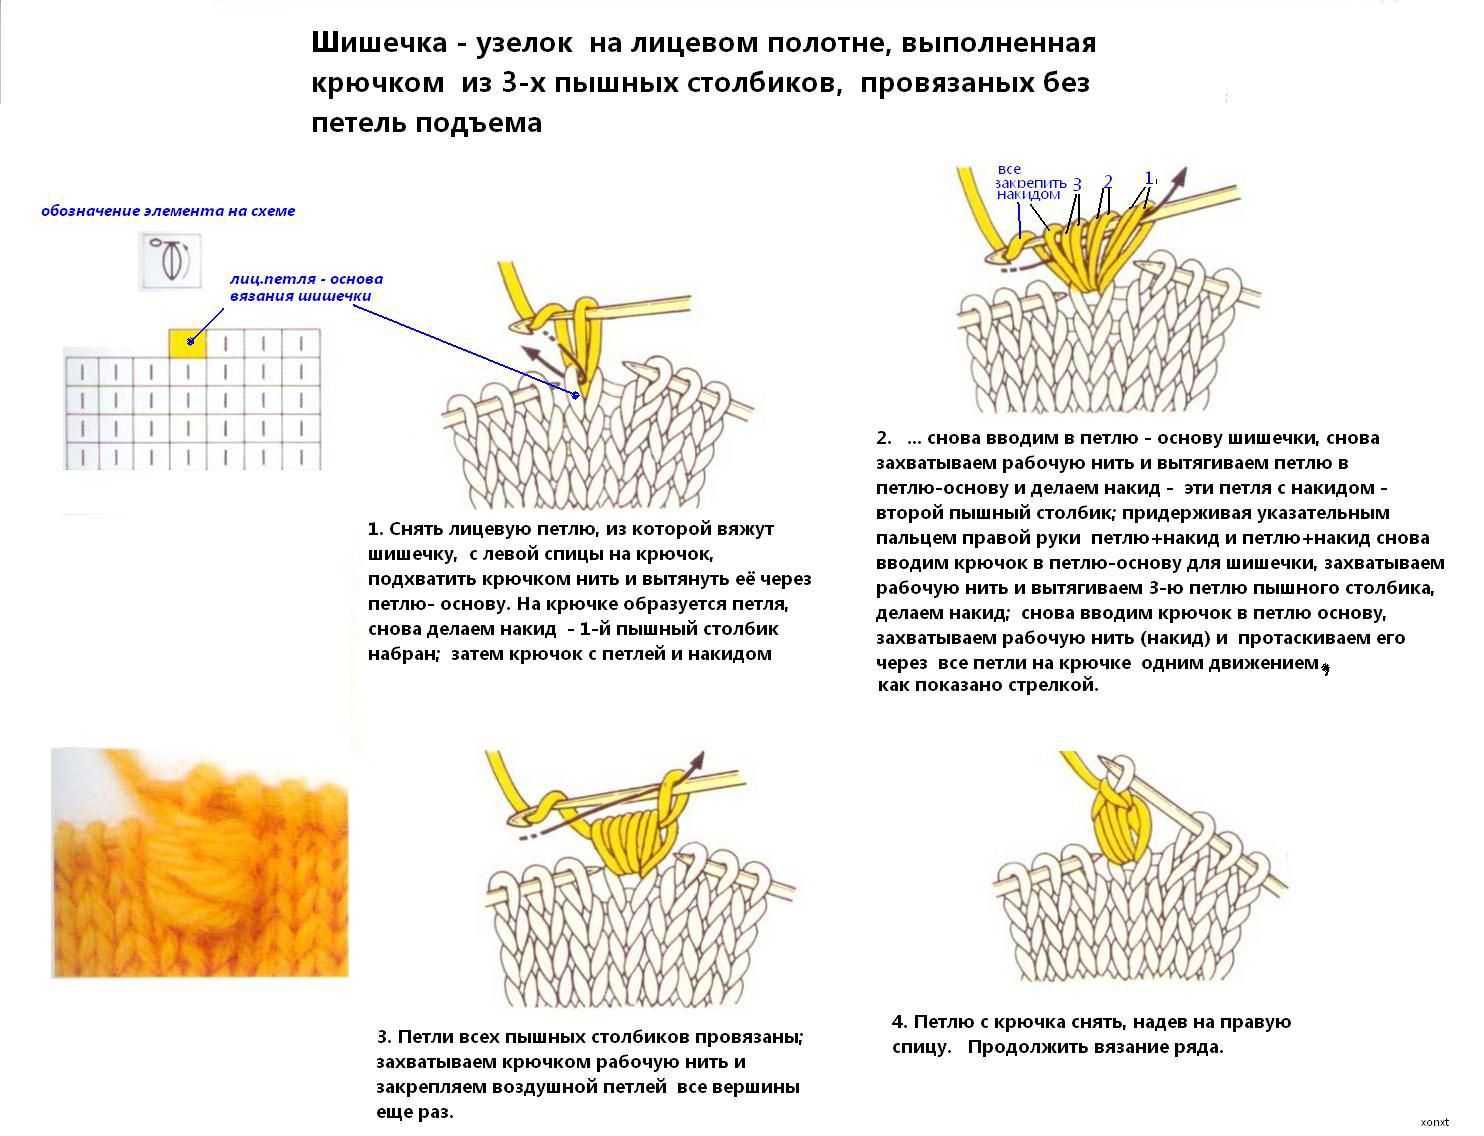 Шишечки спицами схемы с описанием вязания